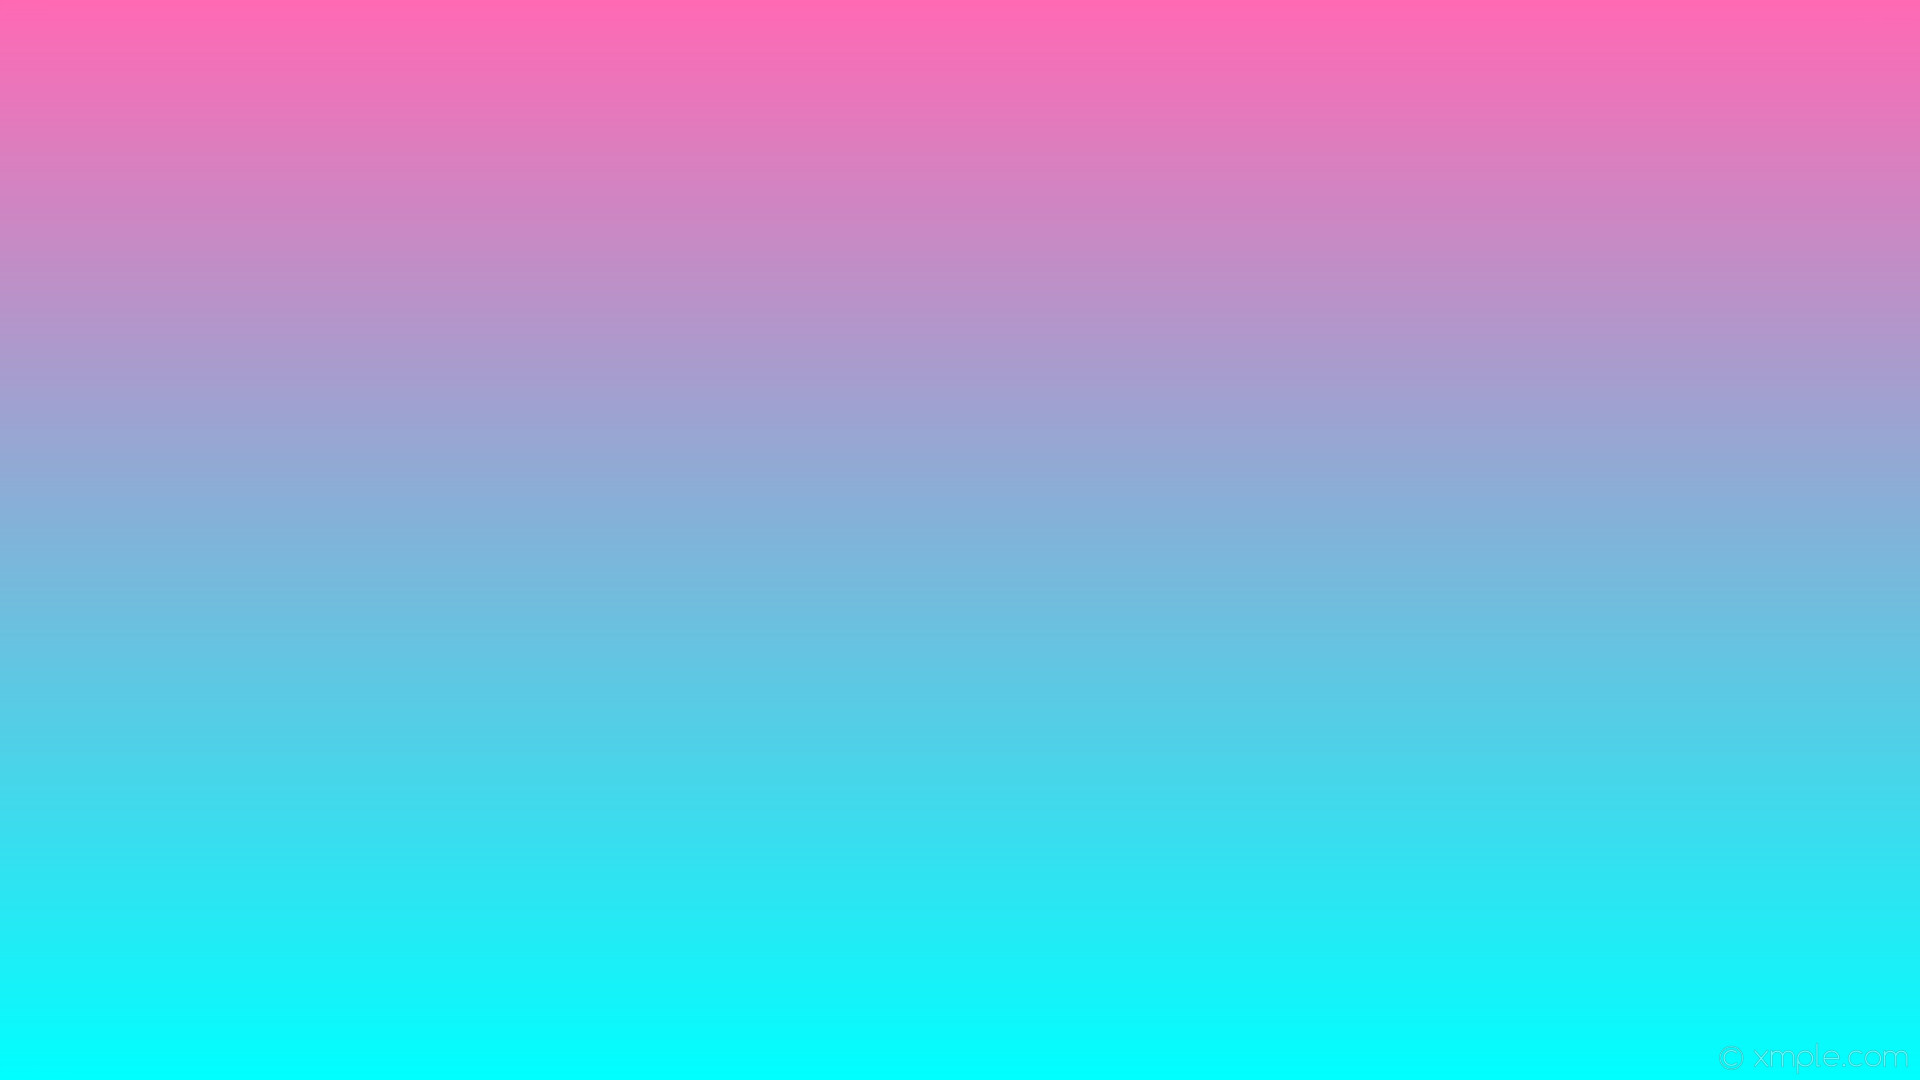 1920x1080 wallpaper blue pink gradient linear hot pink aqua cyan #ff69b4 #00ffff 90Â°